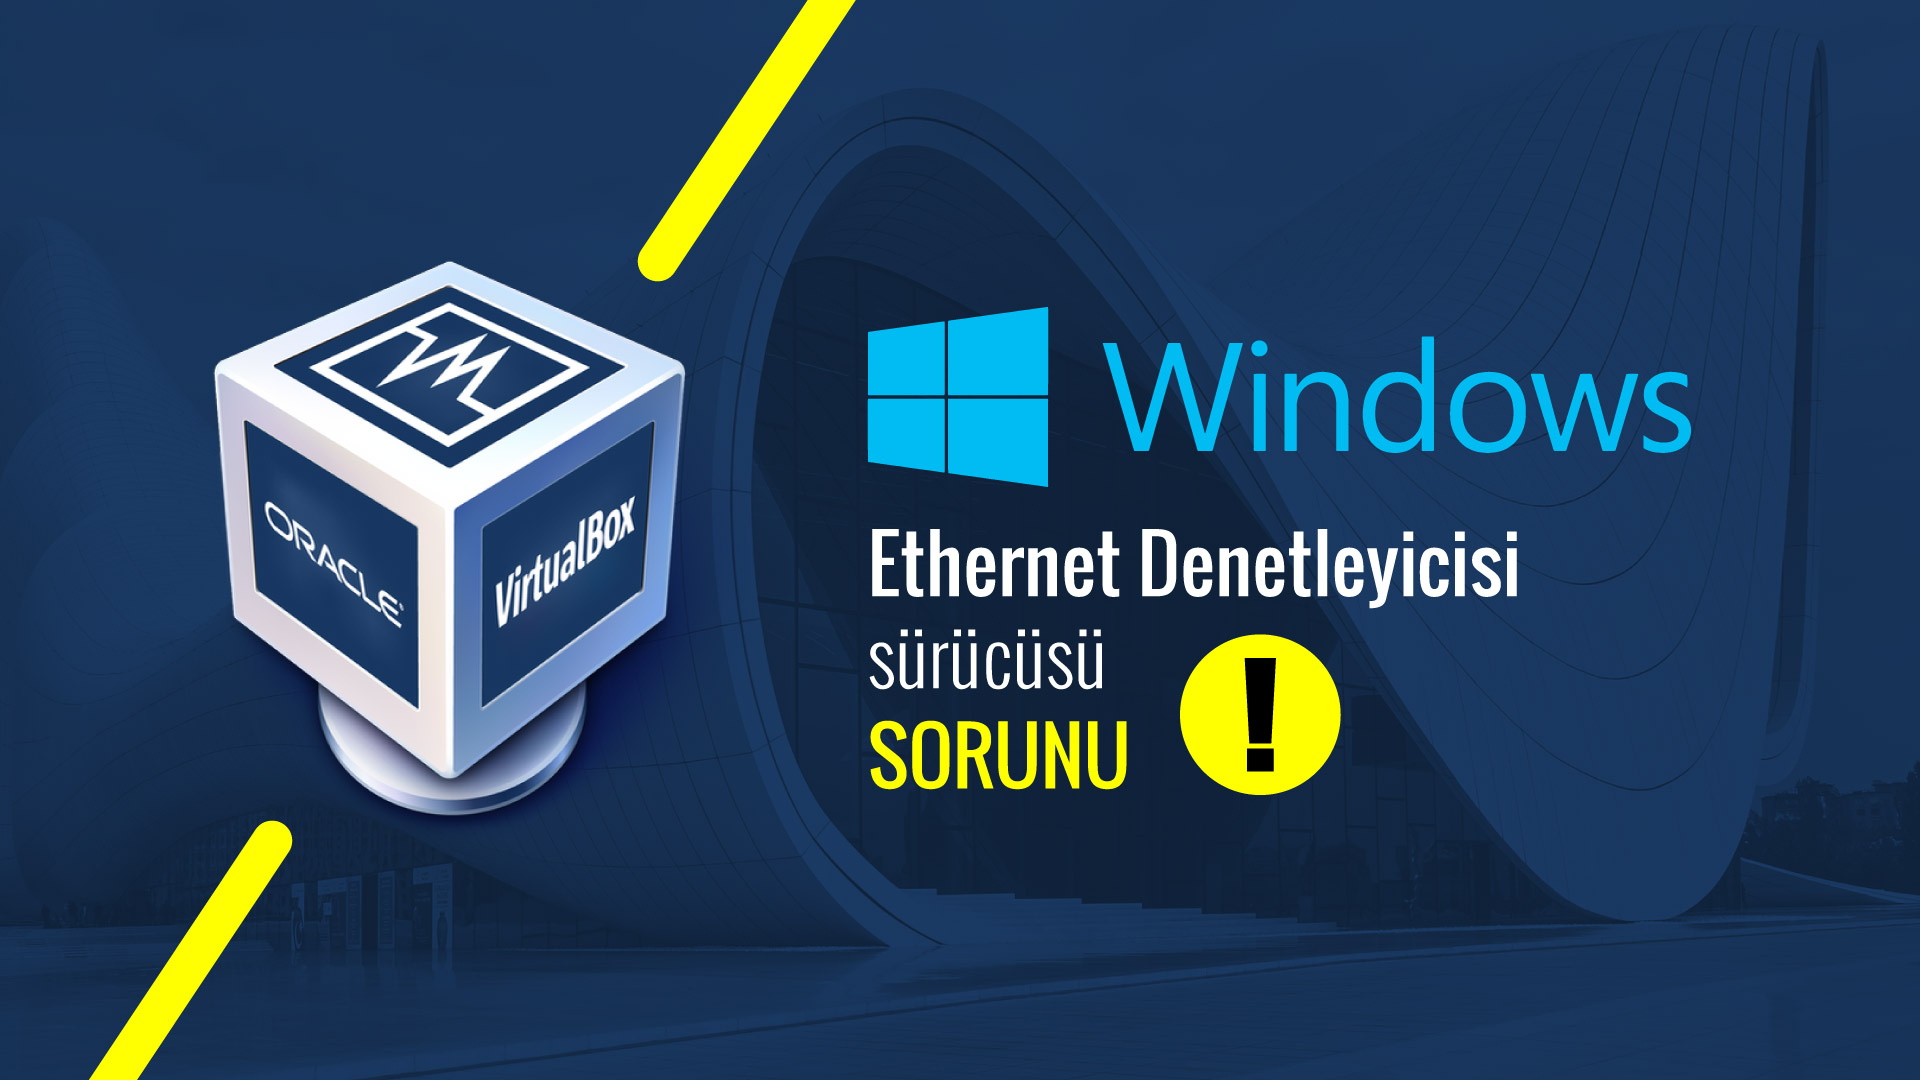 VirtualBox’a kurulu Windows’ta Ethernet Denetleyicisi sürücüsünün sorun çıkarması ve ağa bağlanmaması.